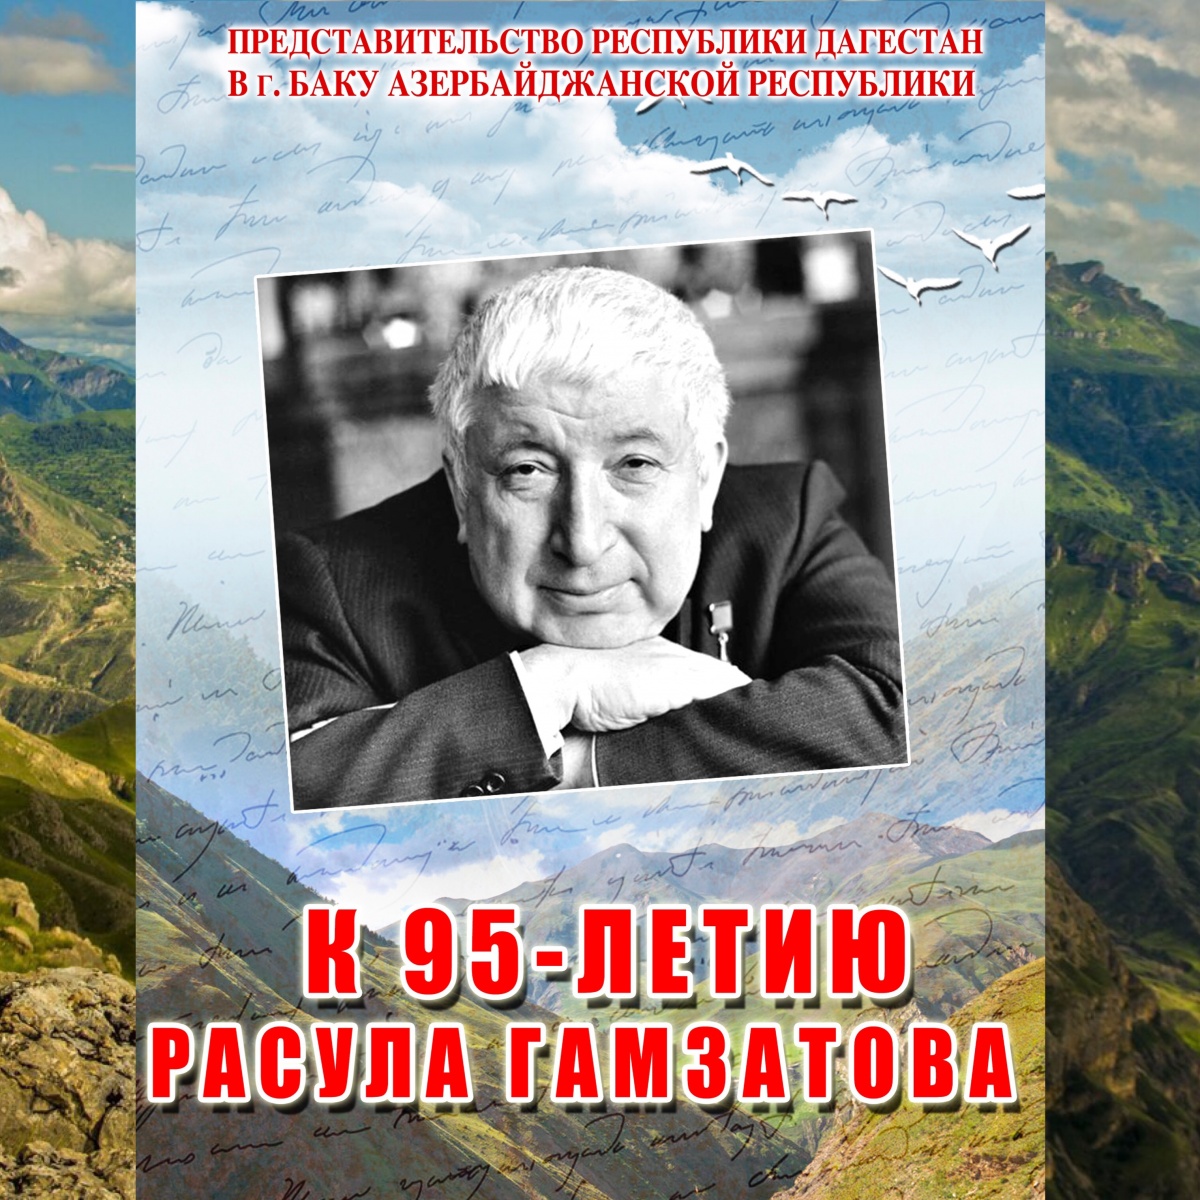 Литературно-музыкальный вечер, посвященный 95-летию Расула Гамзатова.